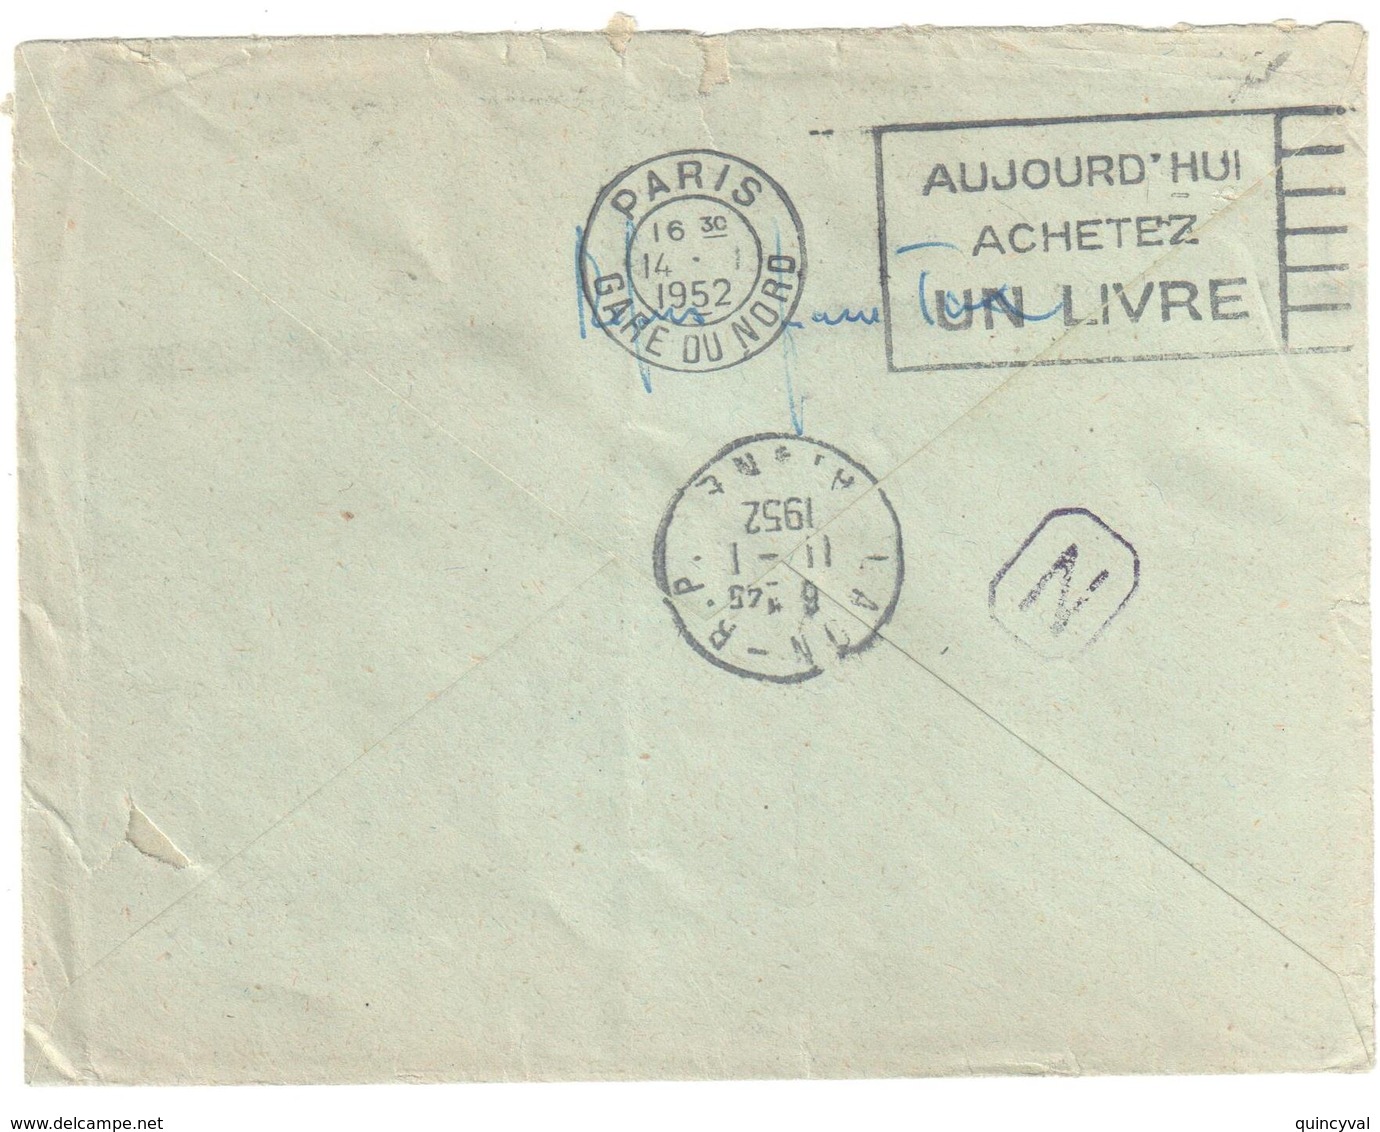 LAON Aisne Lettre NON Affranchie Adressée IMPOTS Taxe REFUSE Rebuts PARIS Ob 1952 10 Fgerbe Orange Yv T 86 - 1859-1959 Covers & Documents